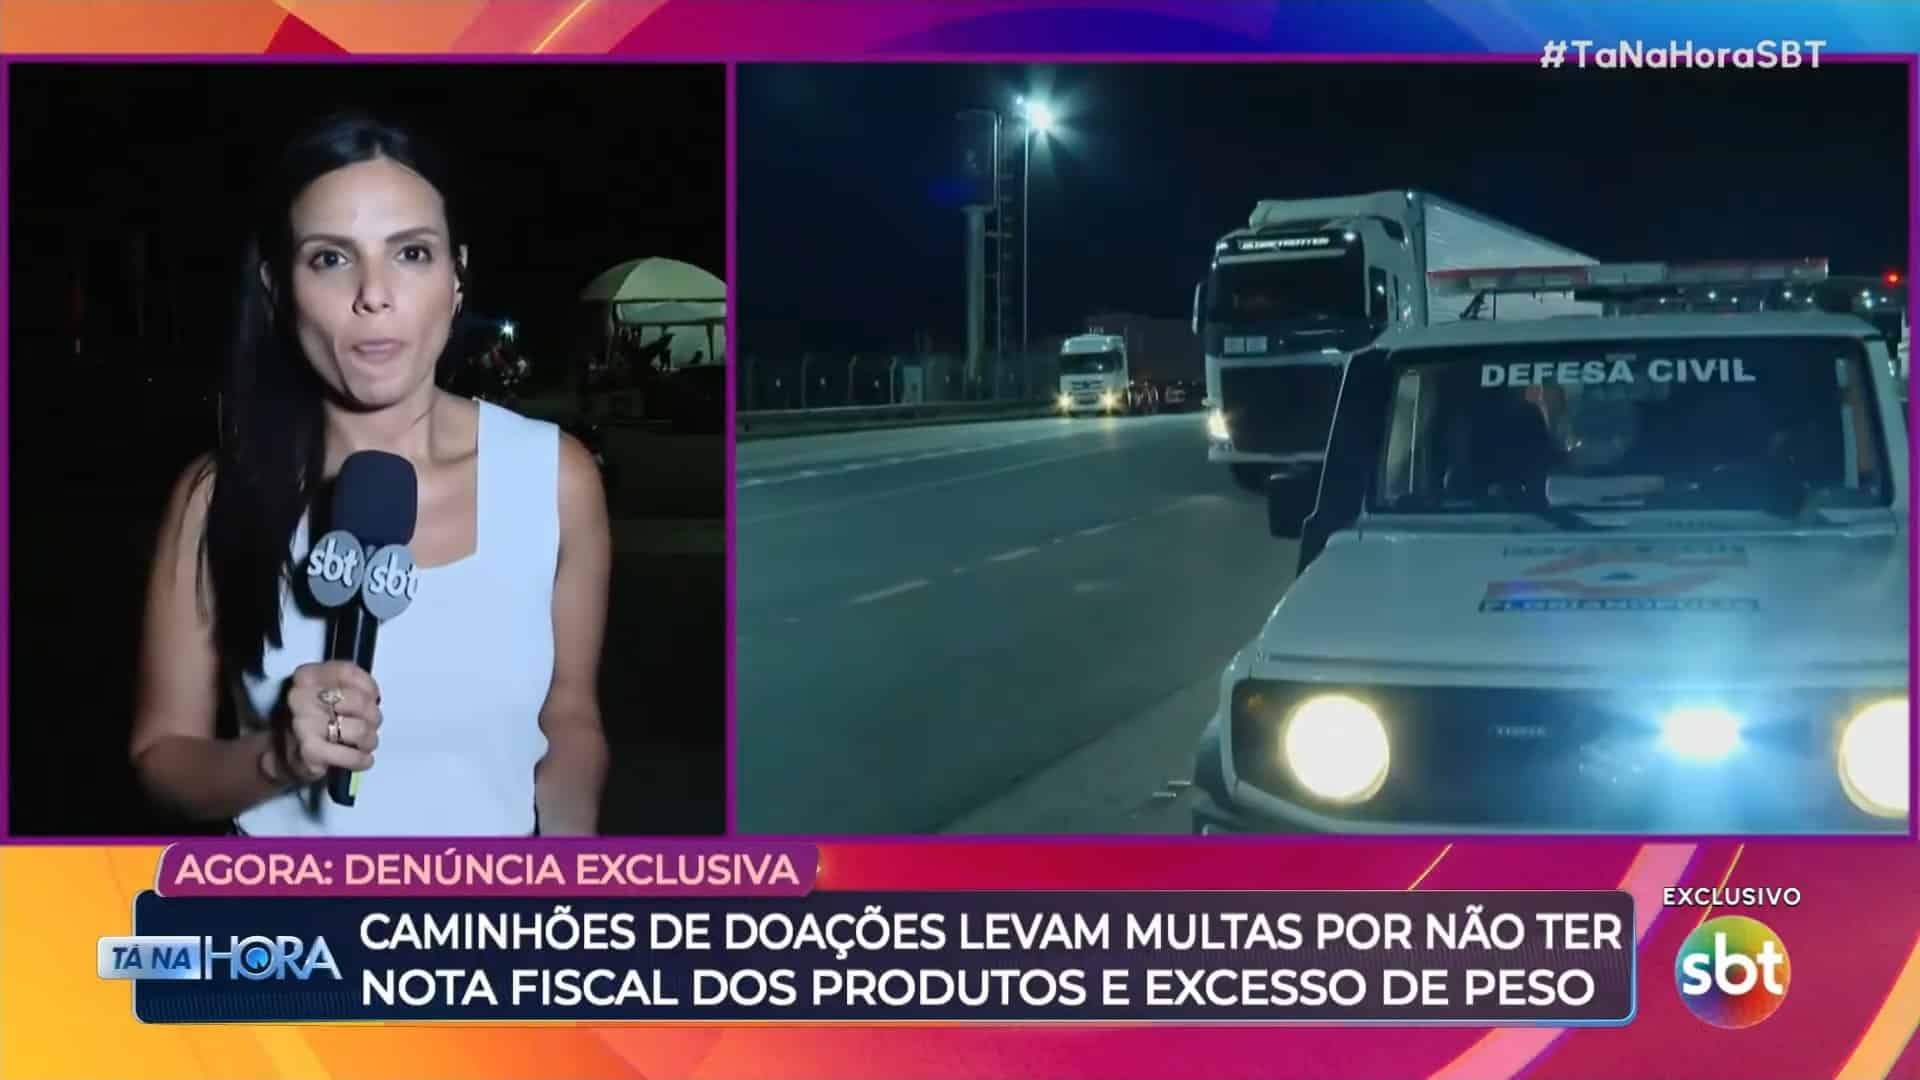 AGORA: ANTT admite informação dada pelo SBT sobre multas para caminhões com doações rumo ao RS